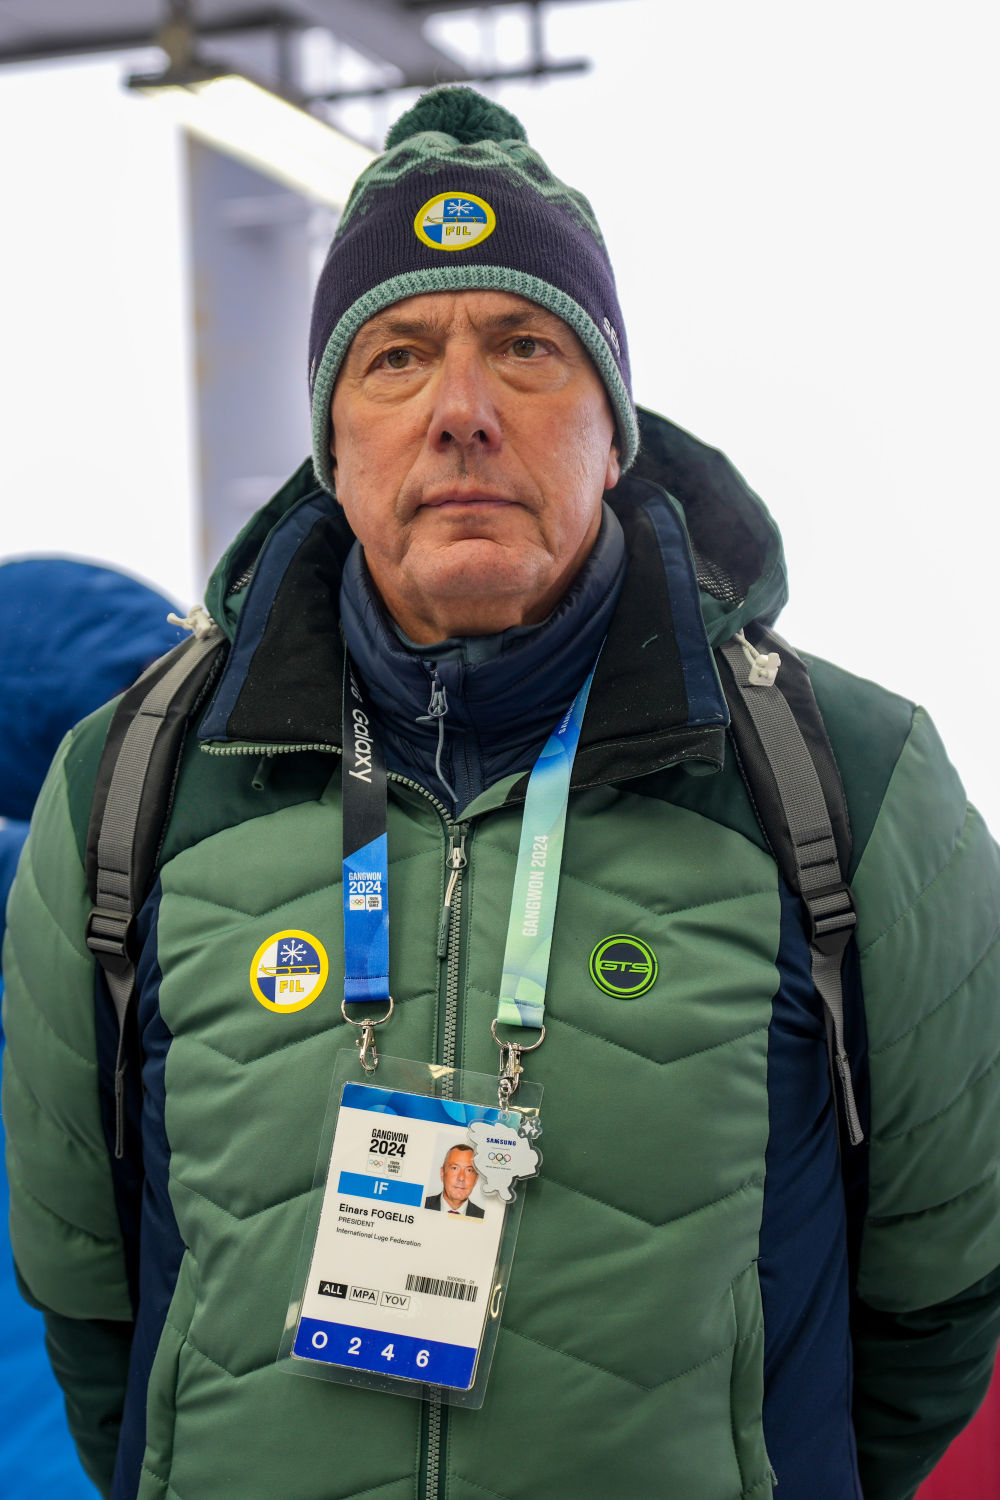 中韩是亚洲推广雪橇运动的大本营——专访国际雪橇联合会主席